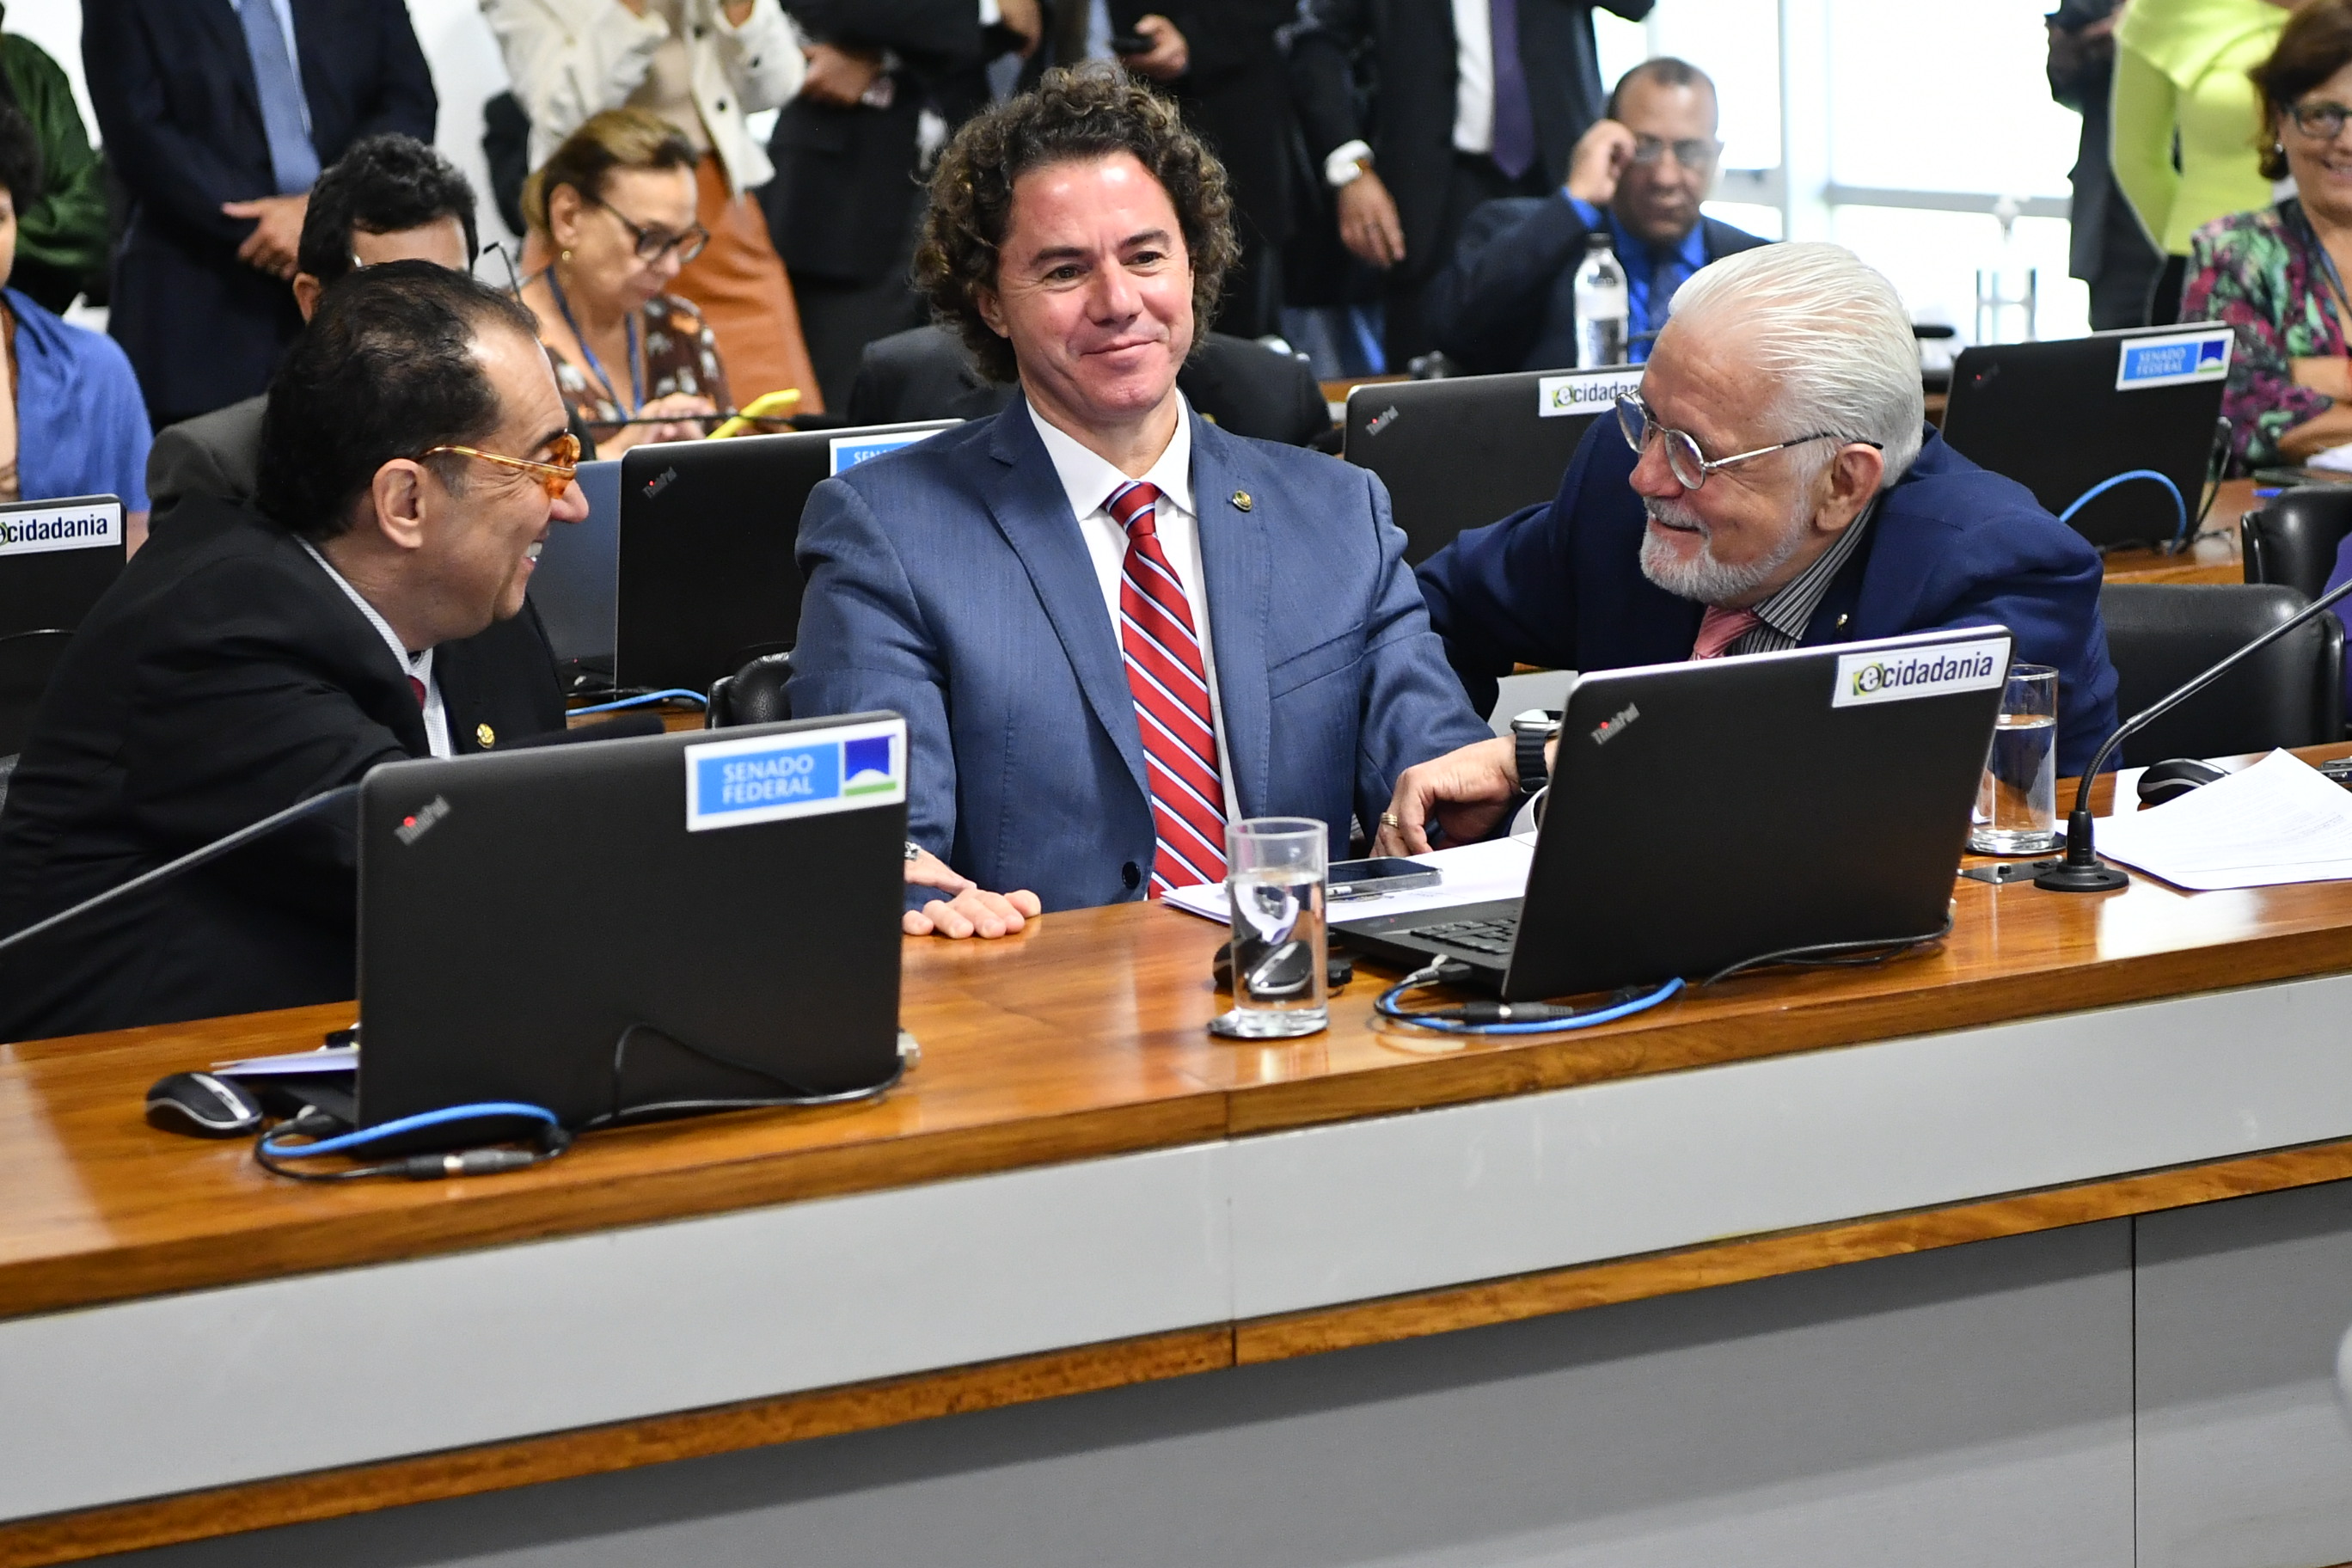 Bancada:
senador Jorge Kajuru (PSB-GO); 
senador Veneziano Vital do Rêgo (MDB-PB); 
senador Jaques Wagner (PT-BA).